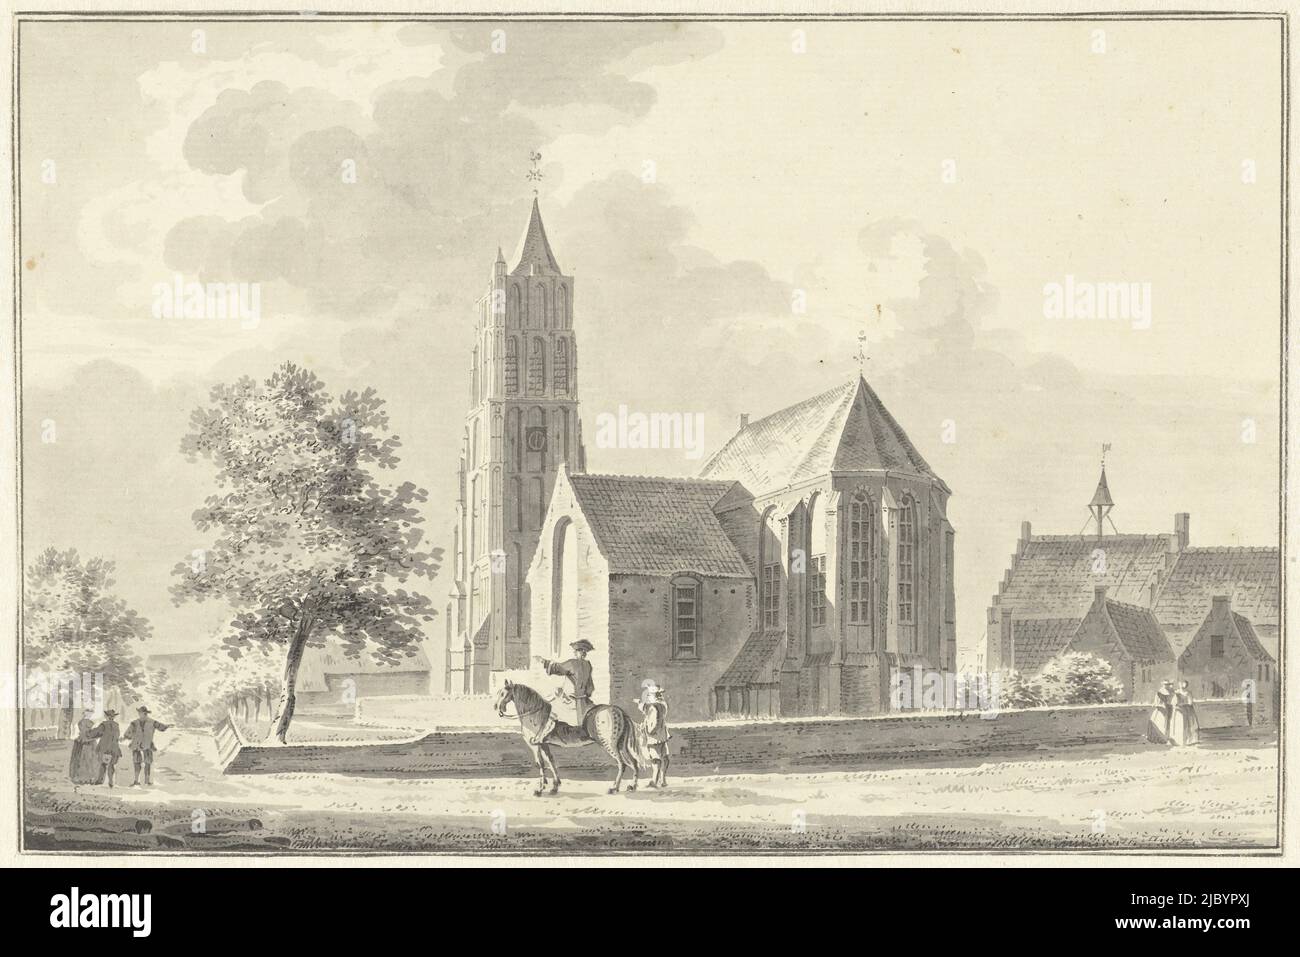 Kirche und Rathaus in Heukelom, Pieter Jan van Lieder, 1756, Zeichner: Pieter Jan van Lieder, 1756, Papier, Stift, Pinsel, H 146 mm × B 220 mm Stockfoto